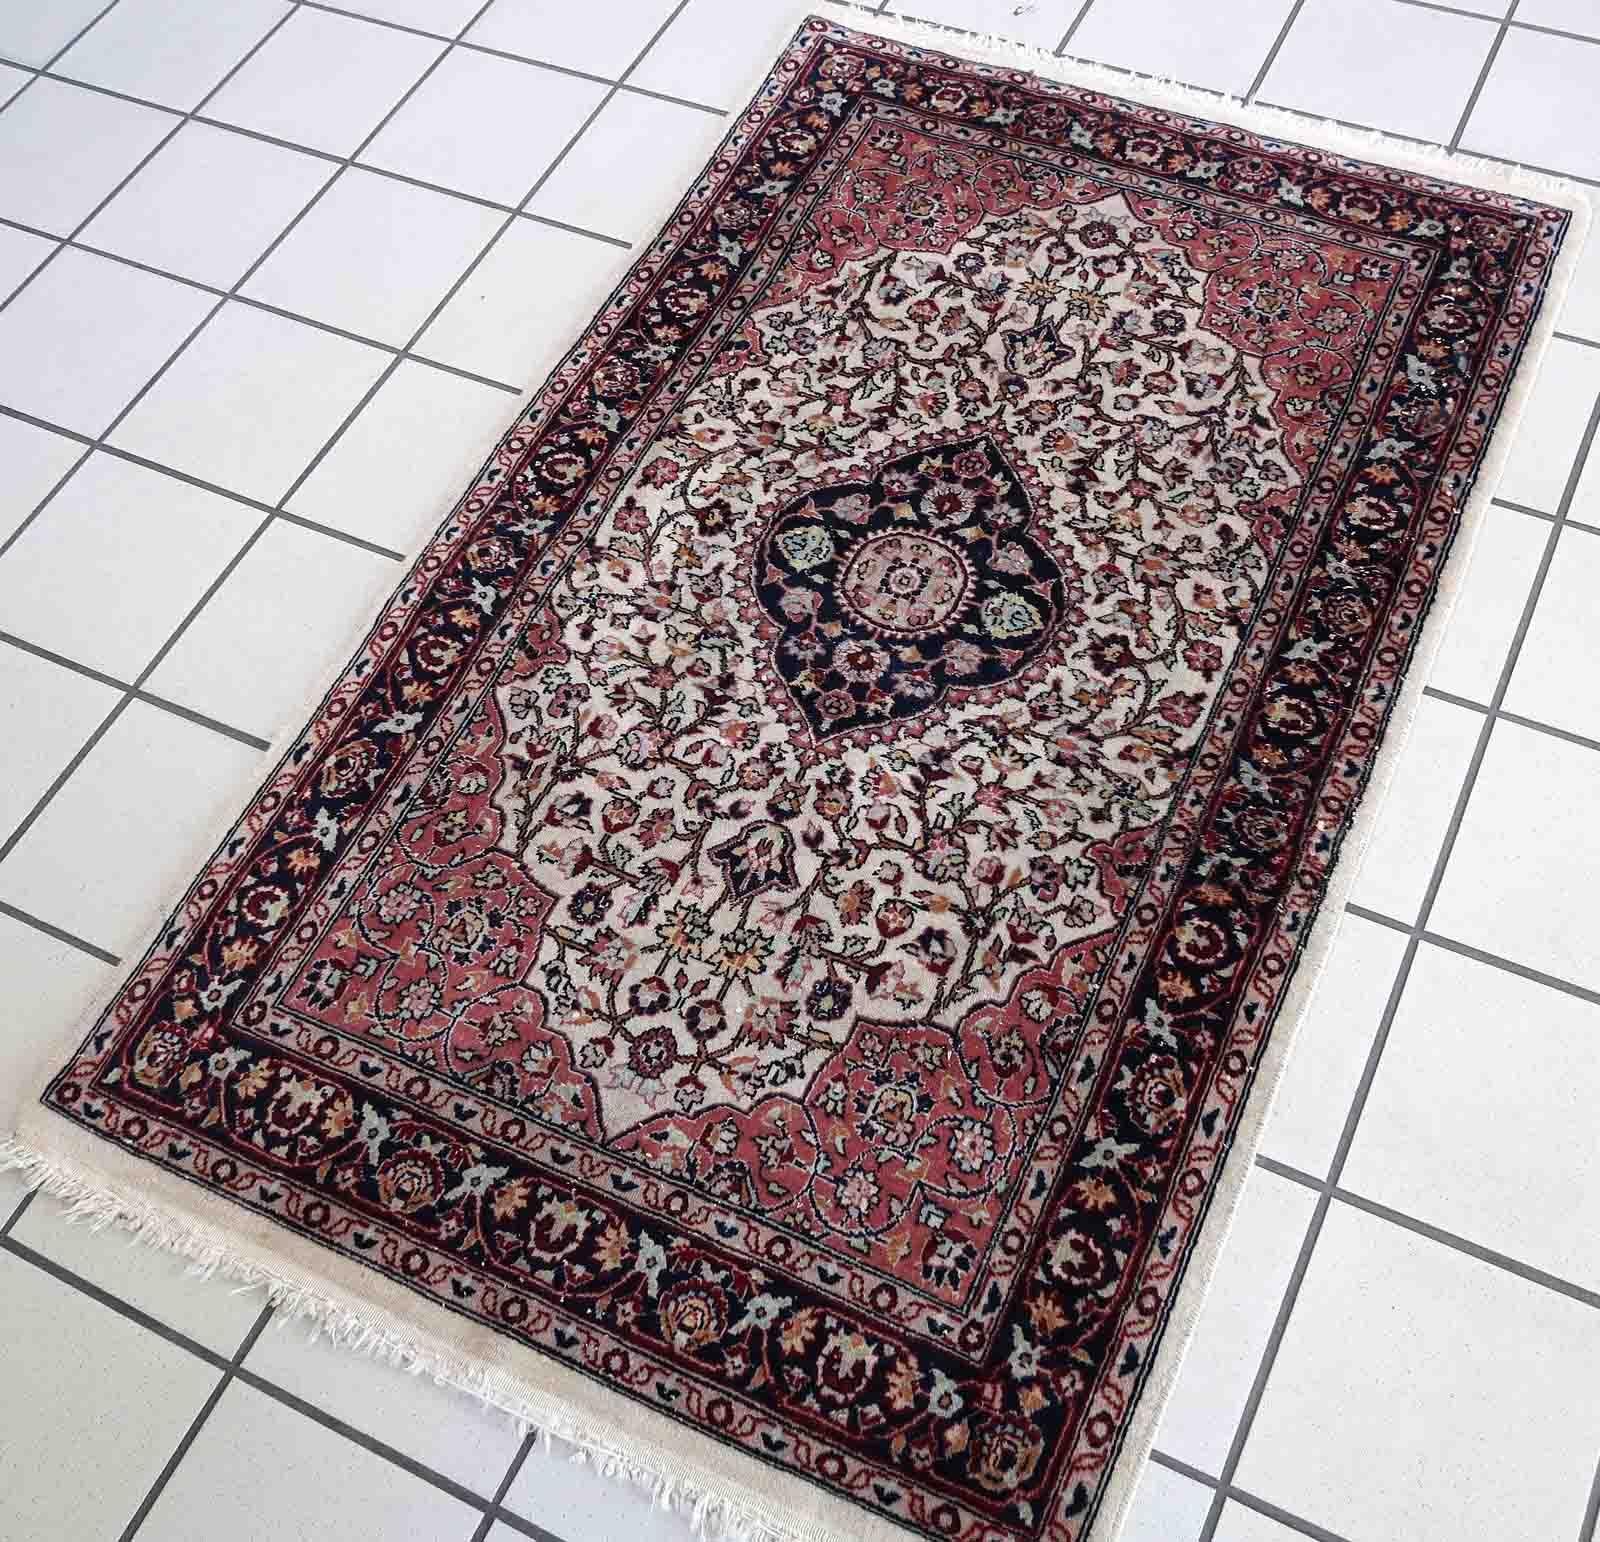 Handgefertigter Vintage-Teppich aus dem Nahen Osten in hellen Farben. Der Teppich stammt aus dem Ende des 20. Jahrhunderts und ist in gutem Originalzustand.

-zustand: original gut, 

-etwa: 1960er Jahre,

-größe: 2,6' x 4,2' (81cm x